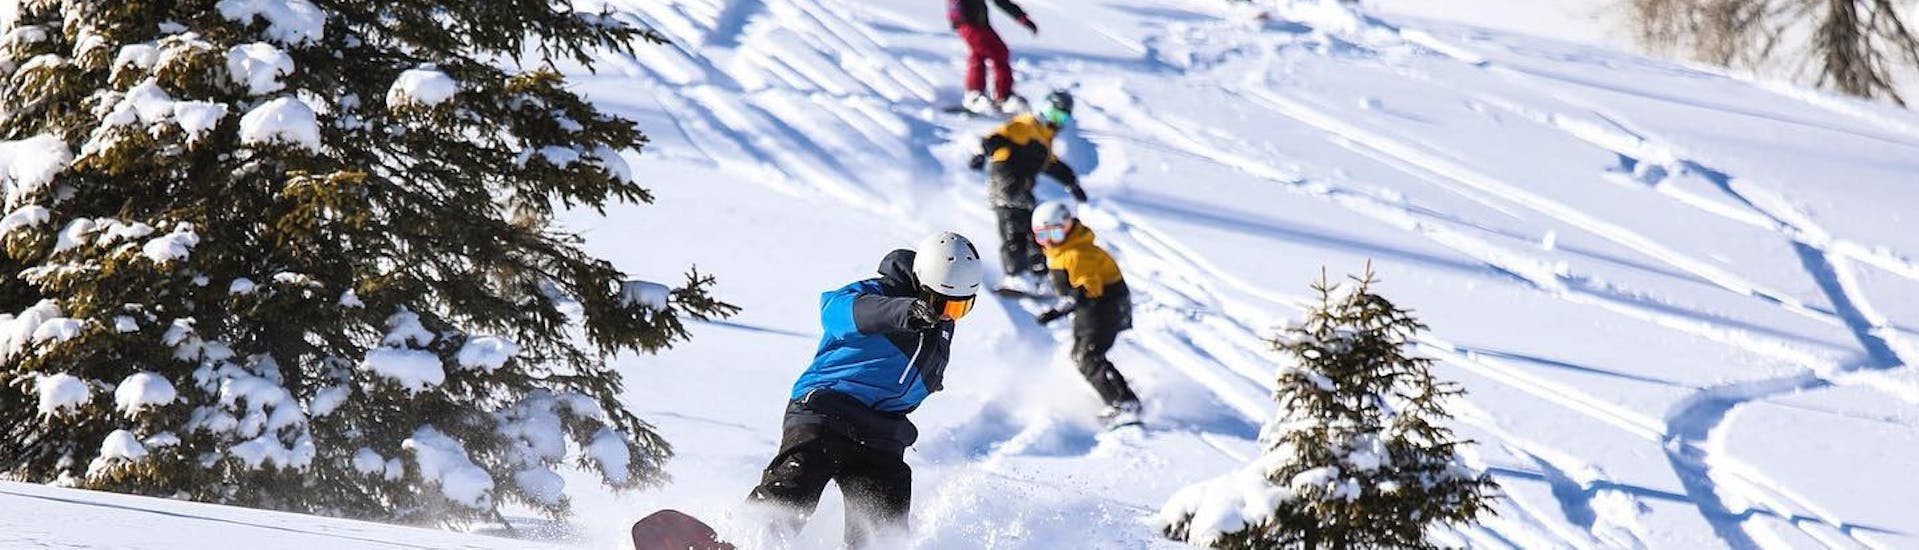 Clases de snowboard a partir de 8 años para todos los niveles.